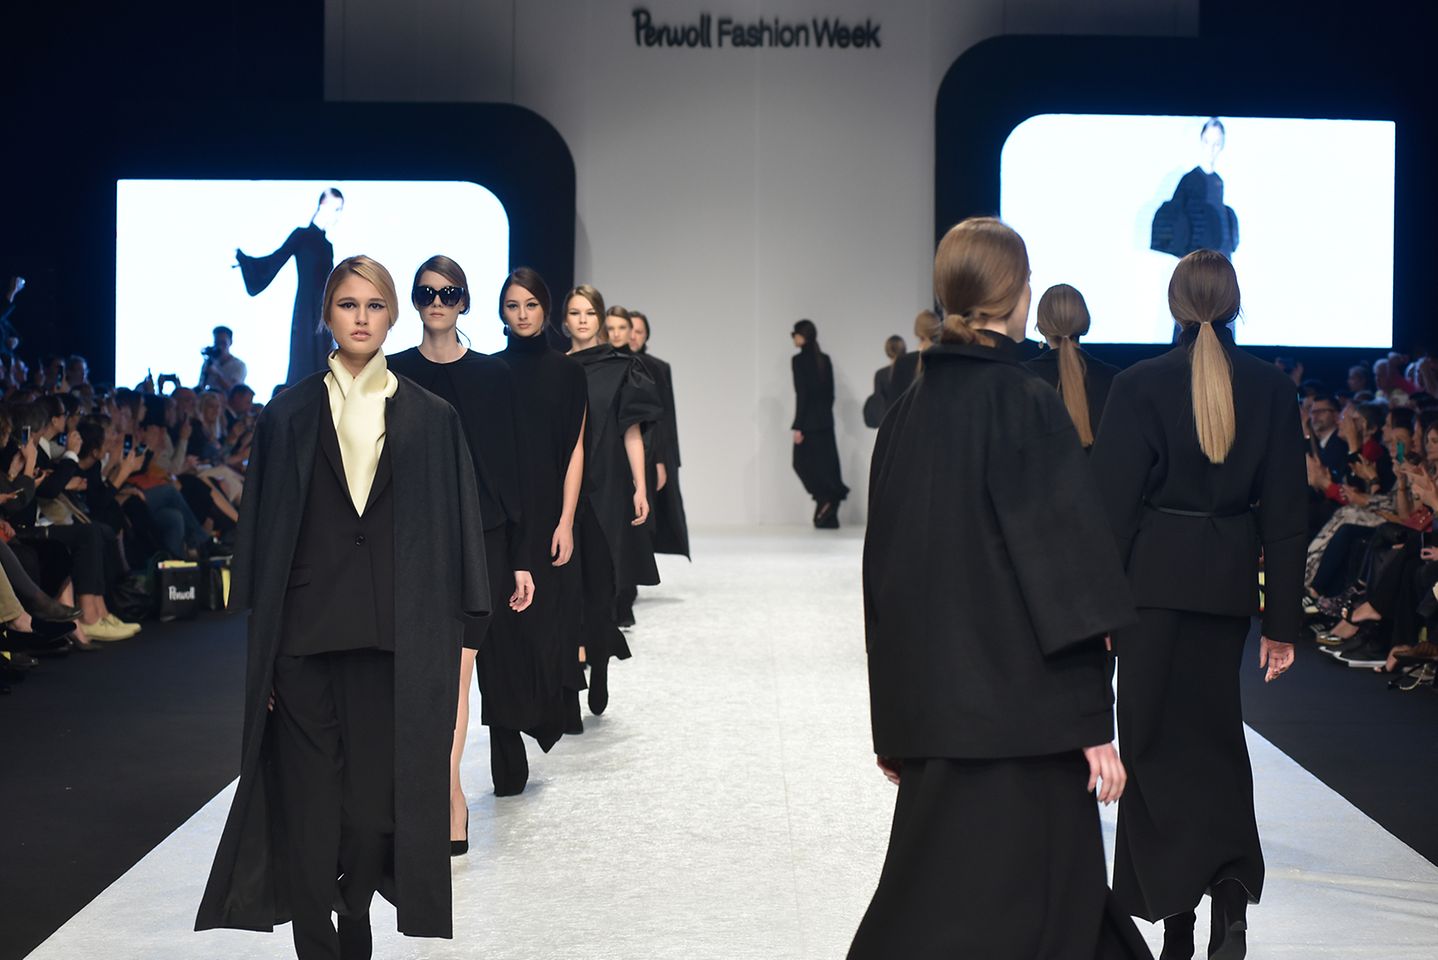 2019-11-05-Perwoll Fashion Week.jpg (11)